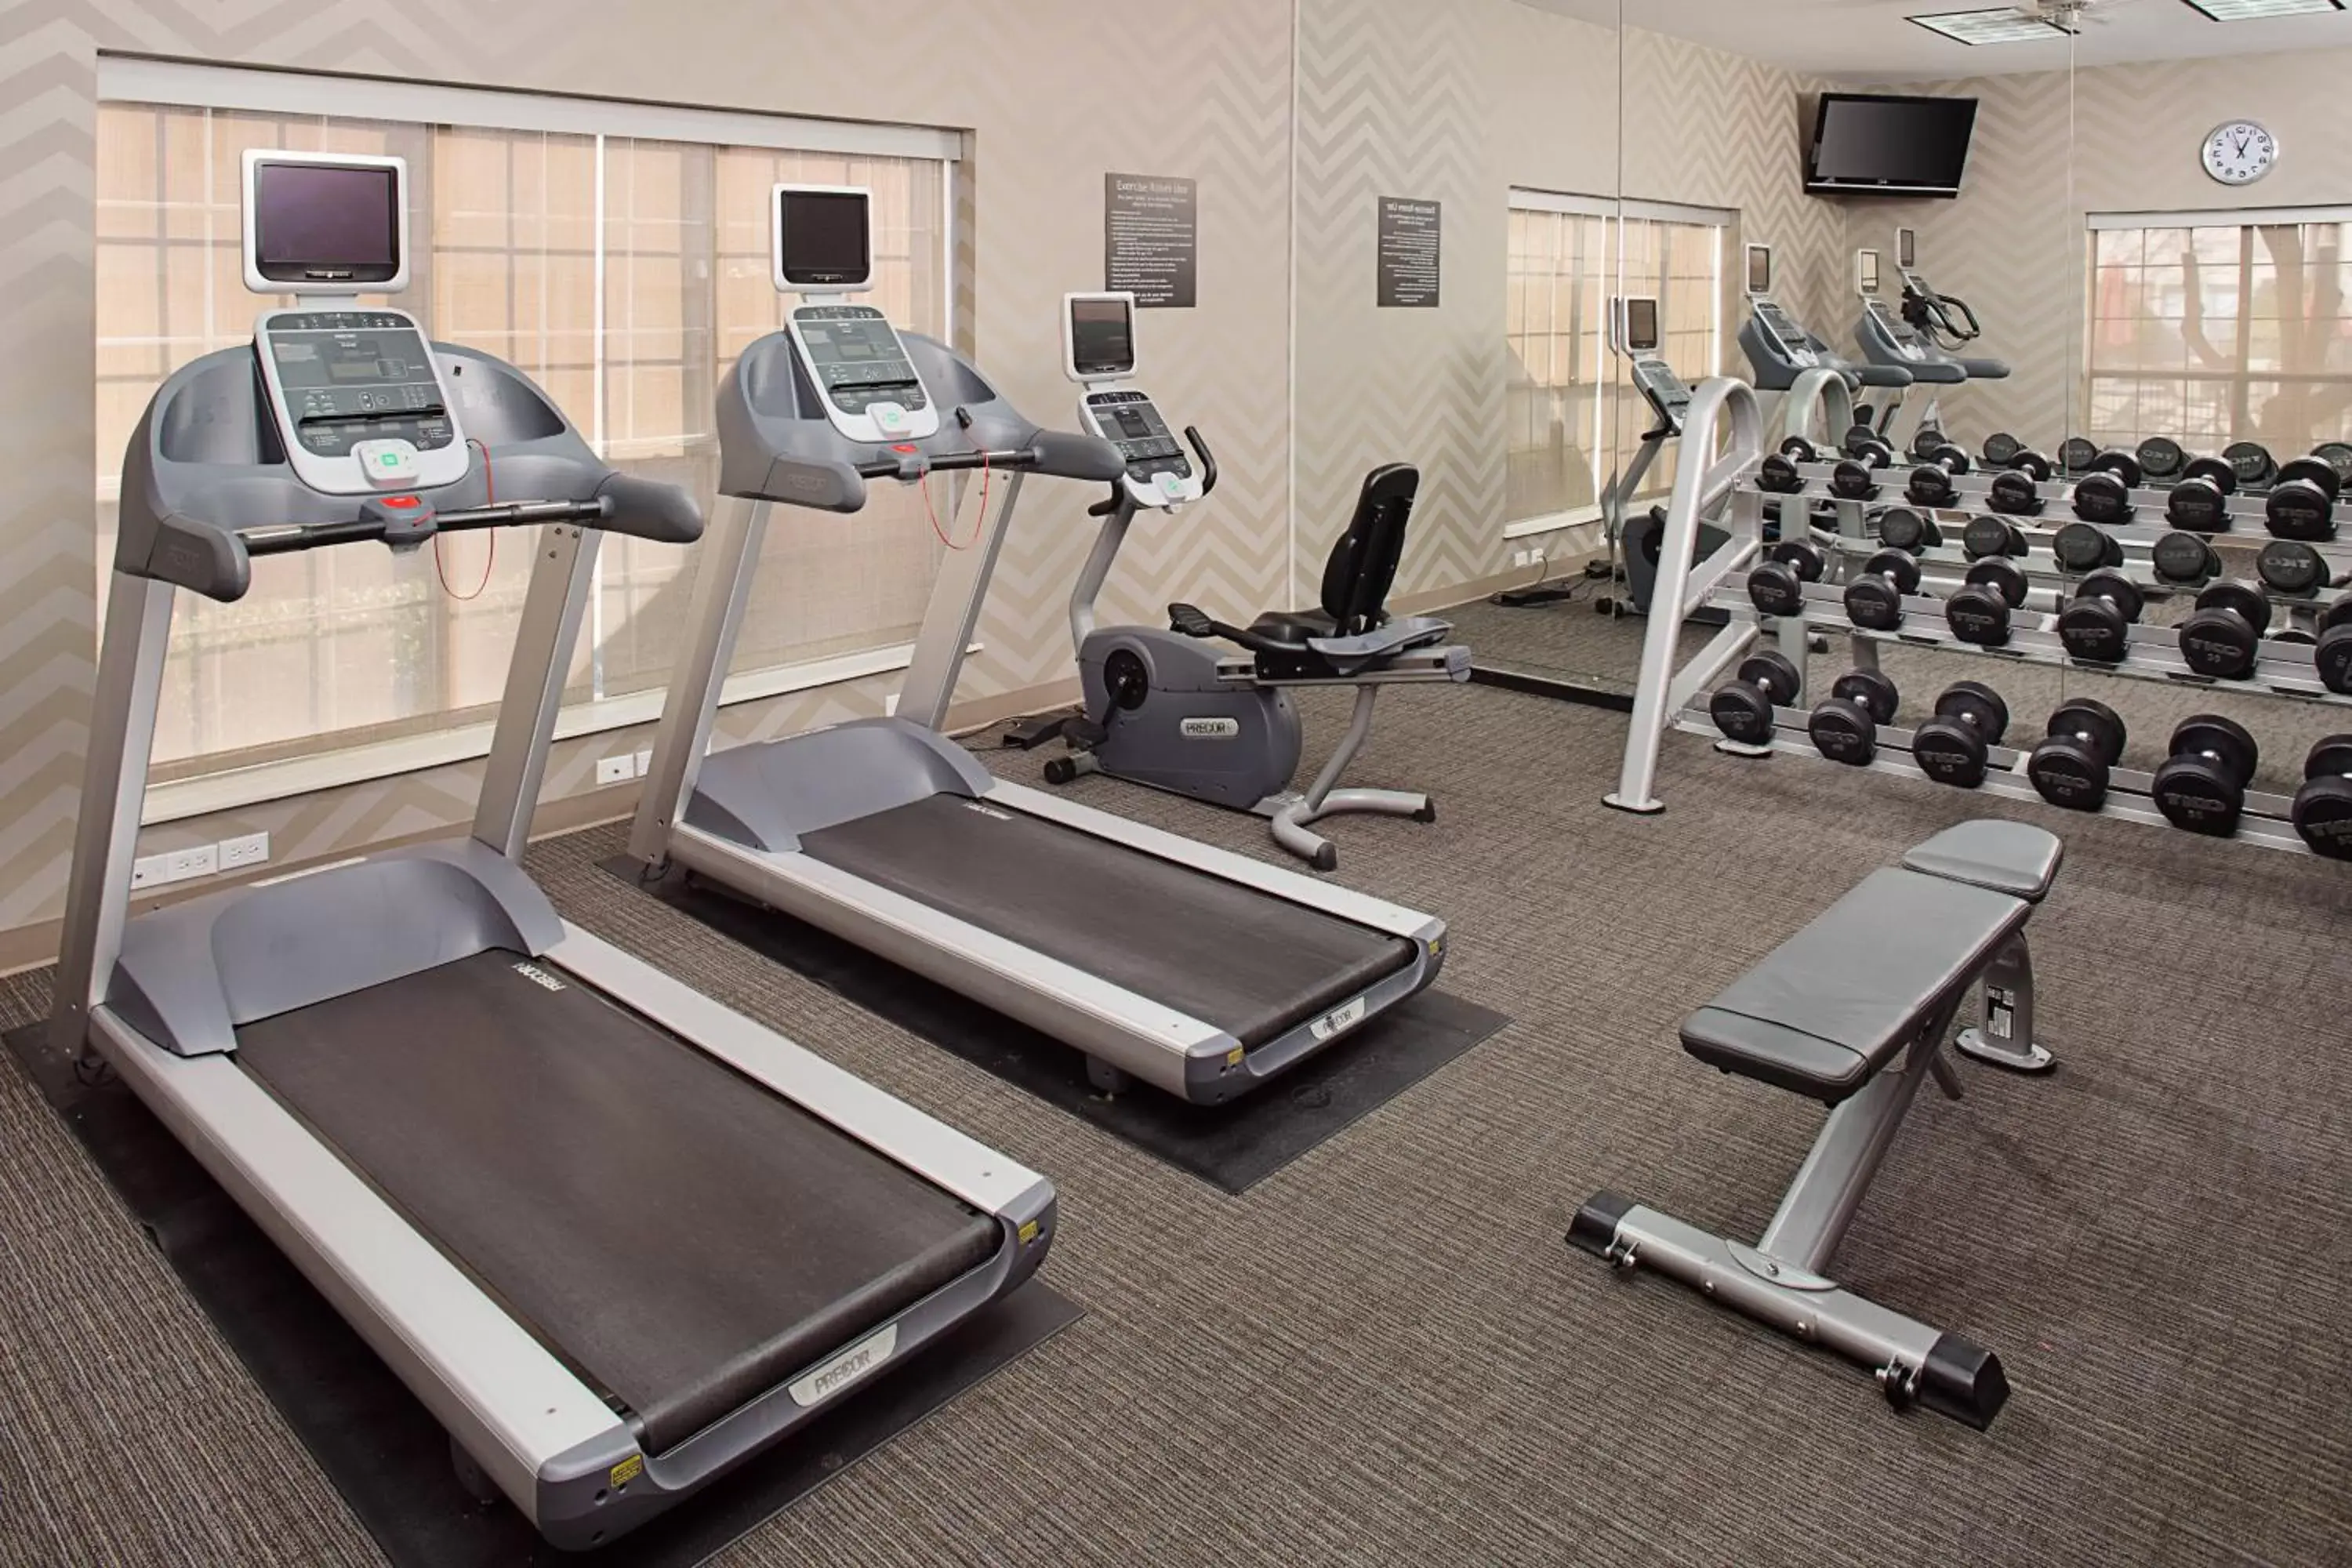 Fitness centre/facilities, Fitness Center/Facilities in Residence Inn Arlington